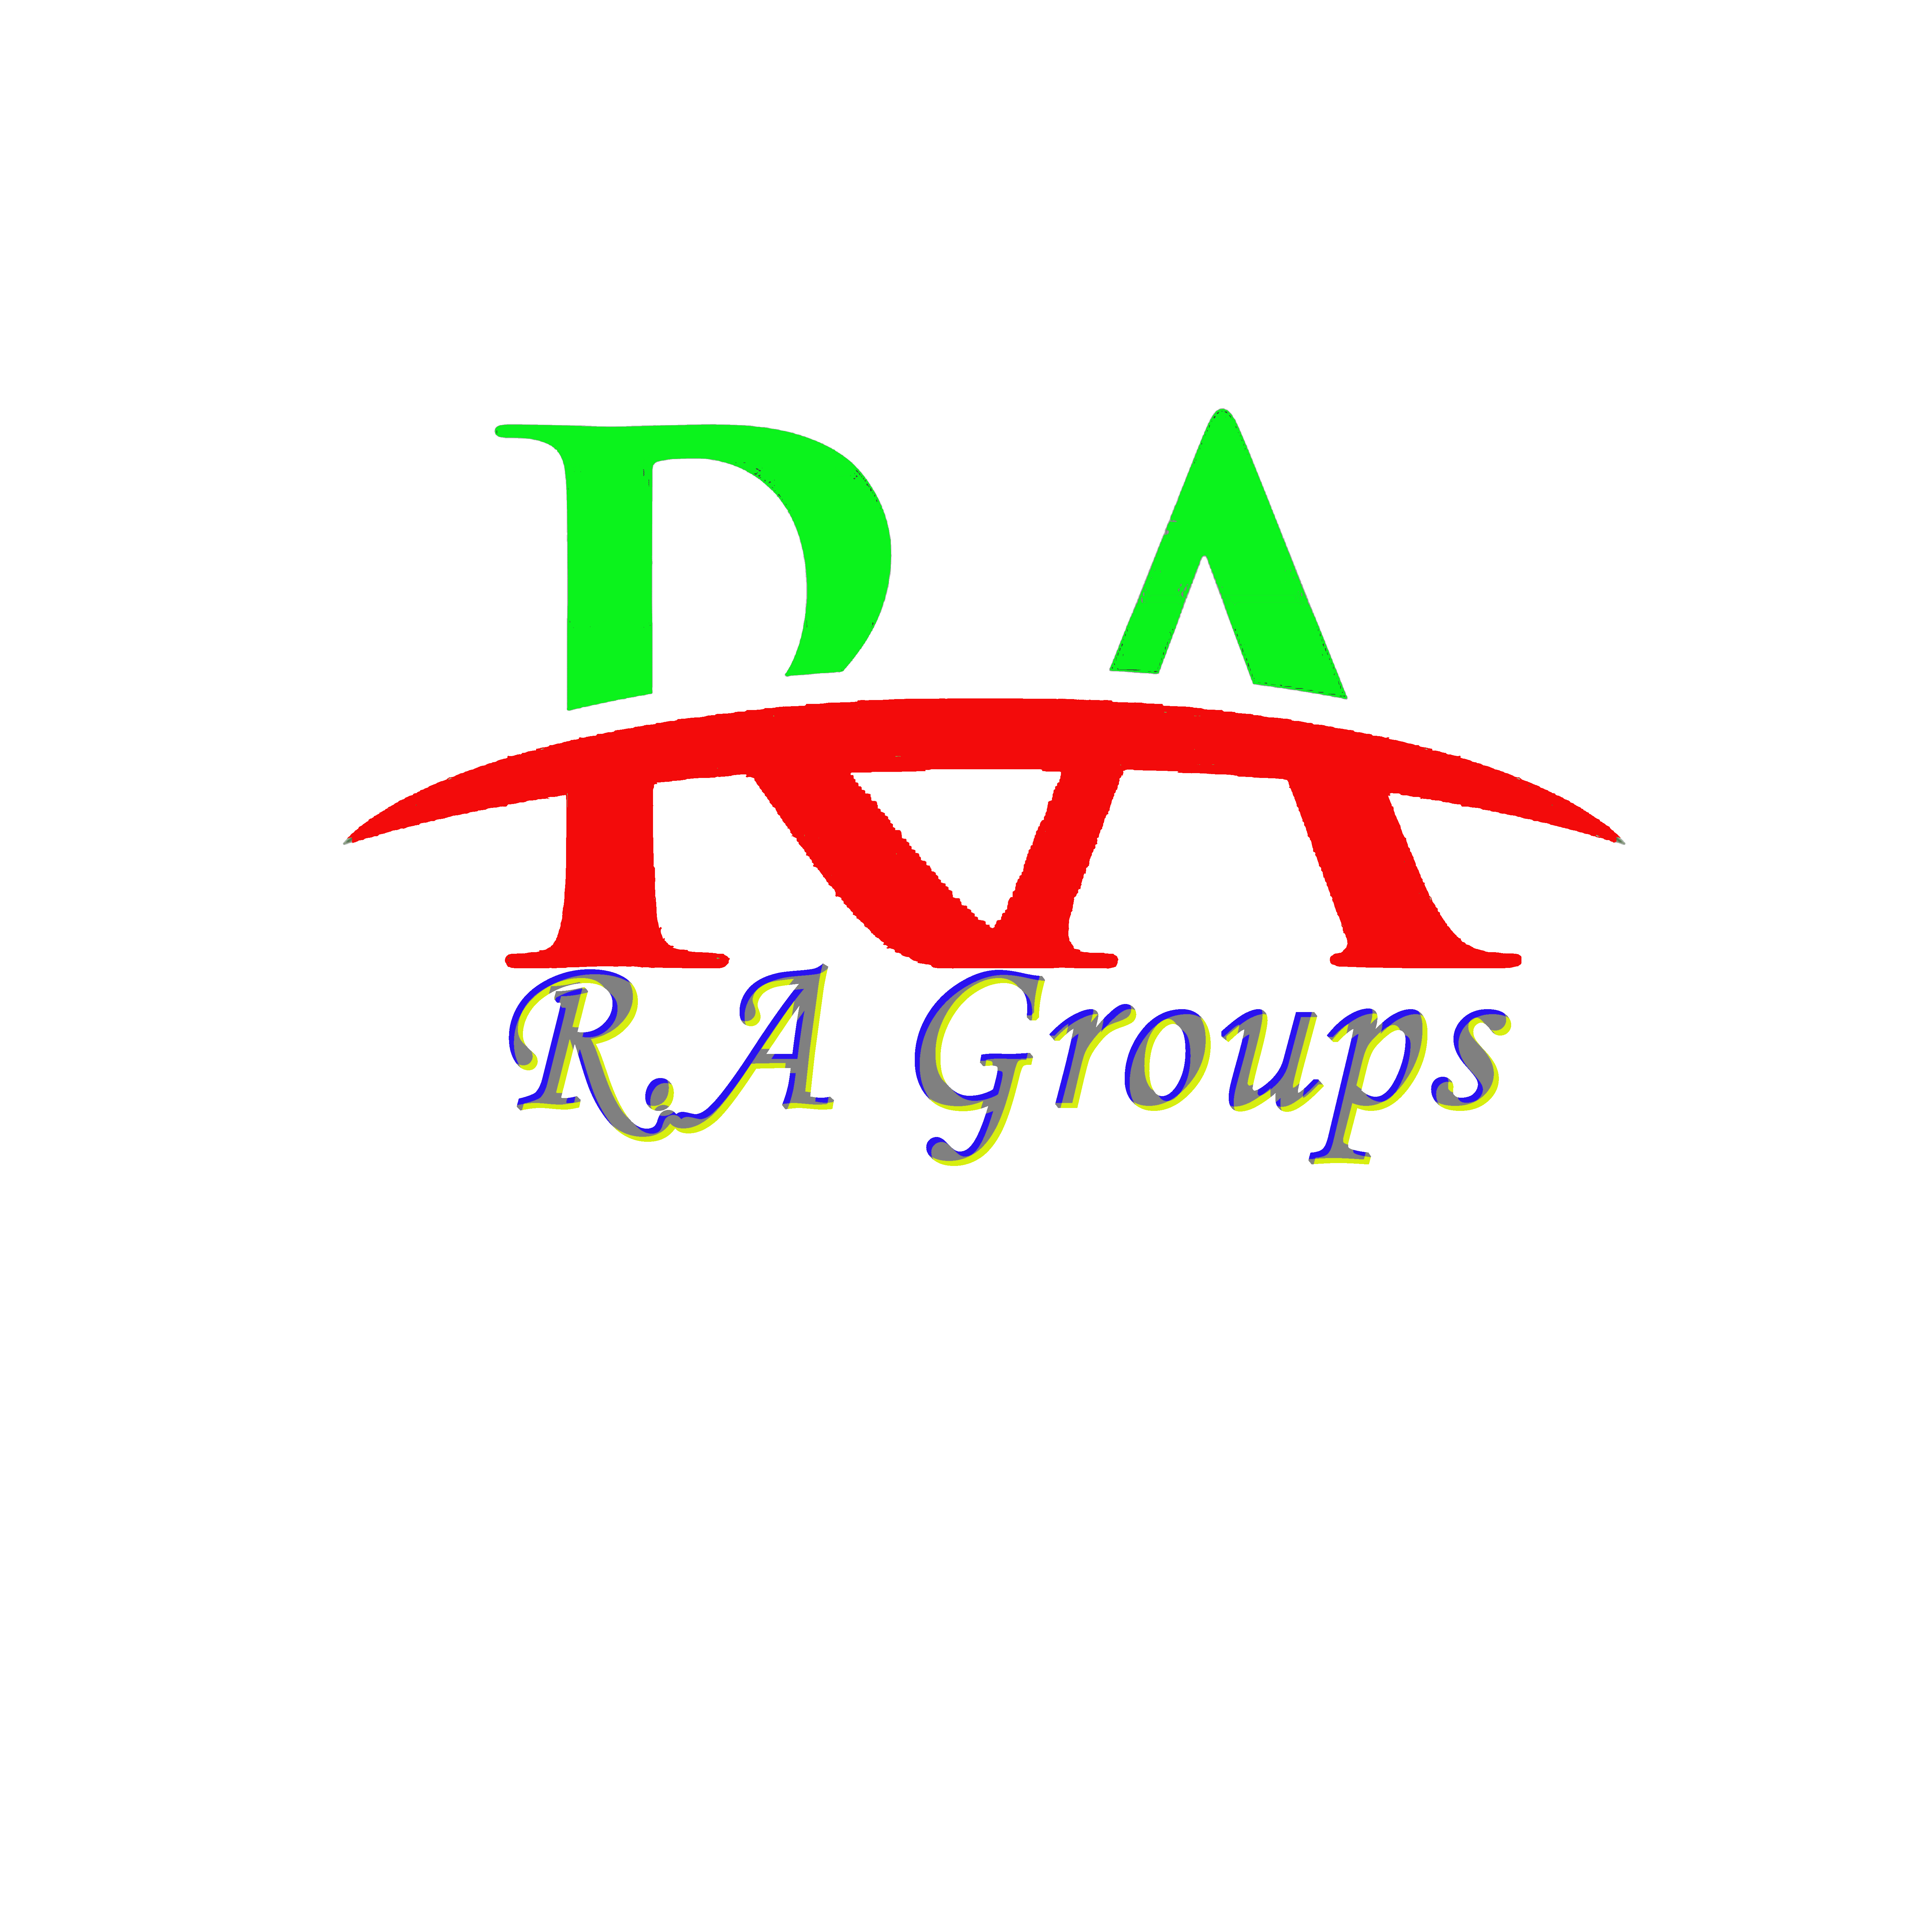 RA Group's